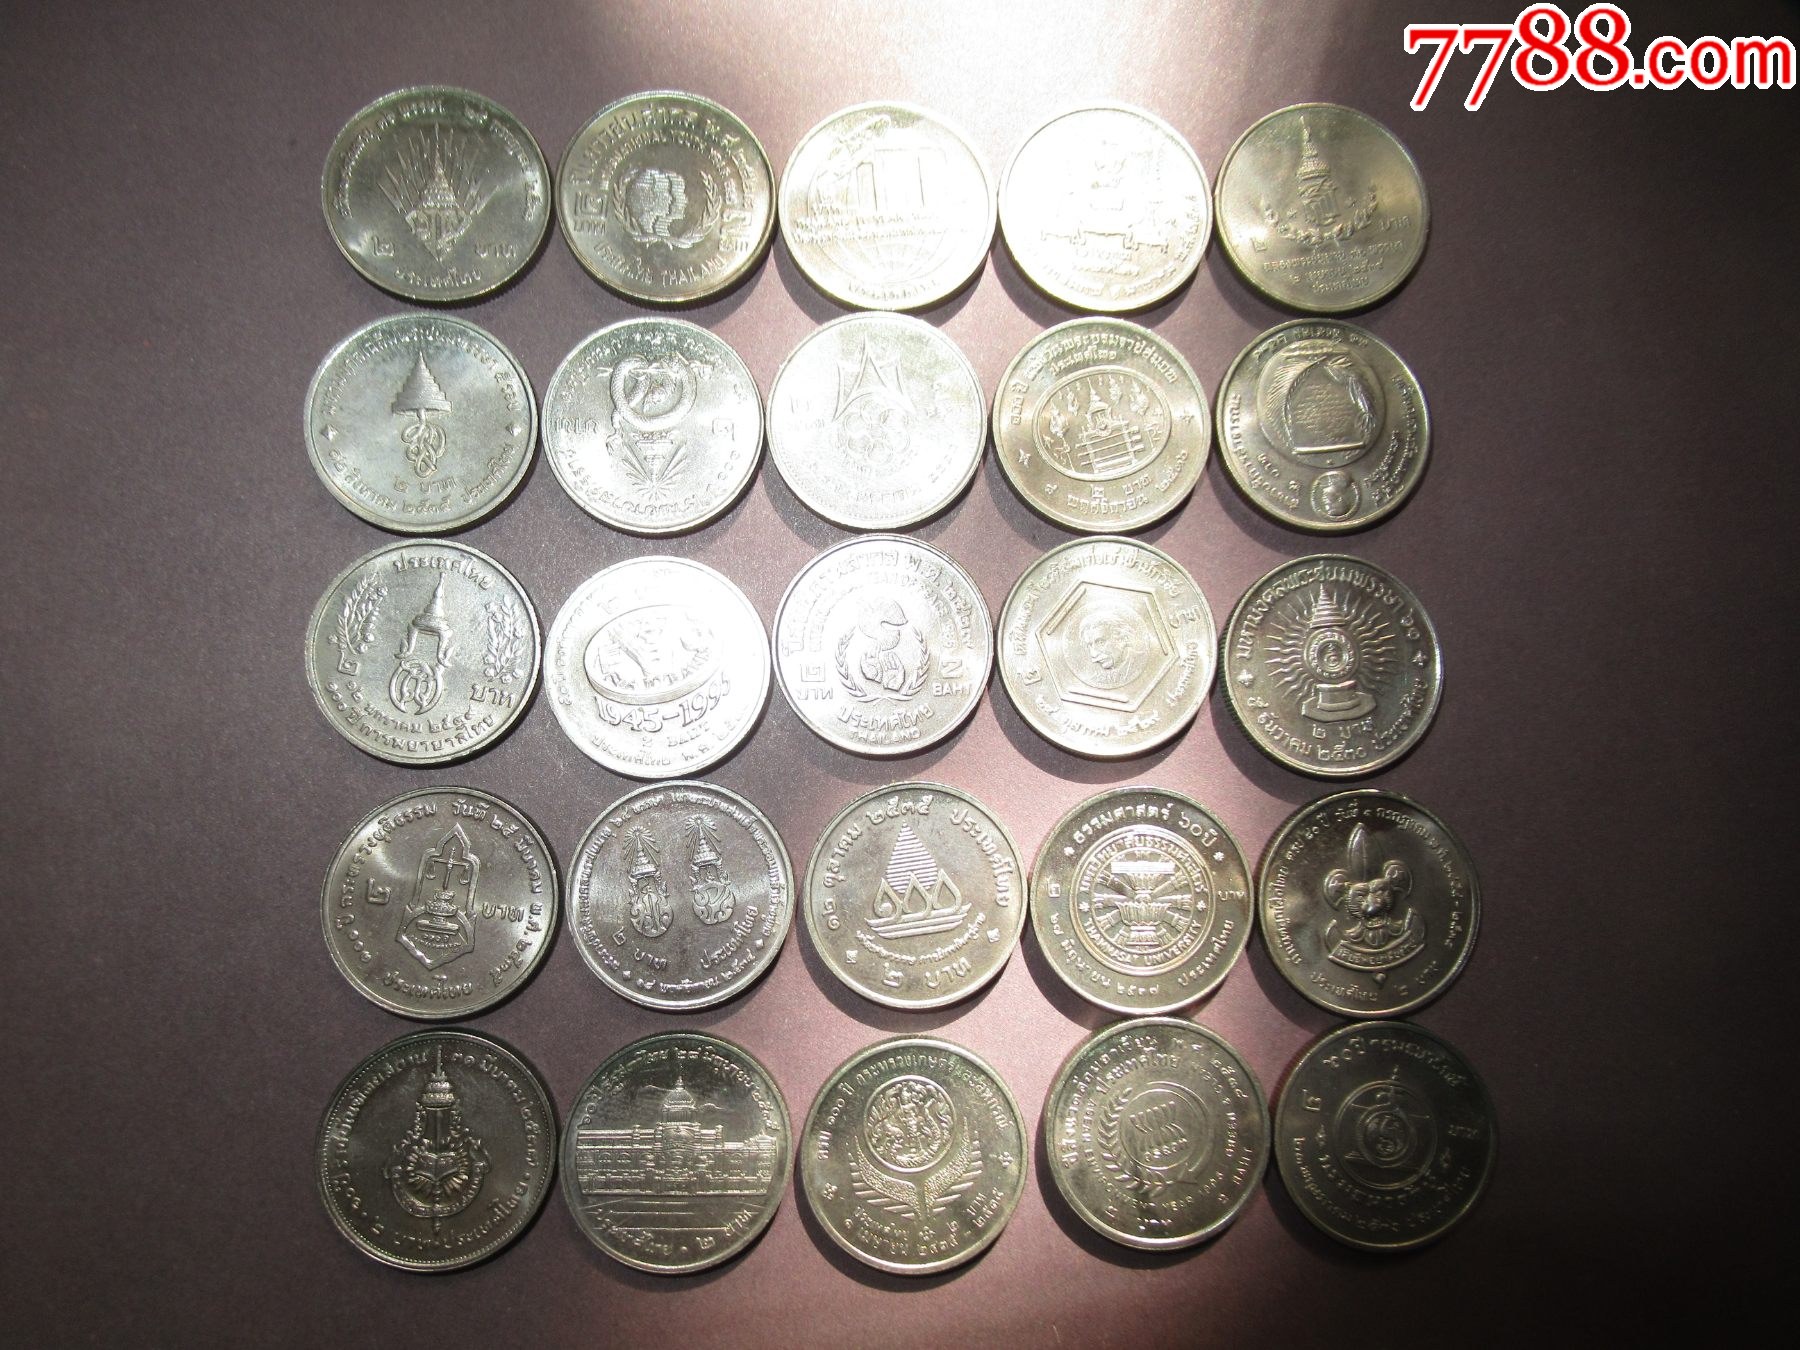 泰国面值2铢纪念币25枚套